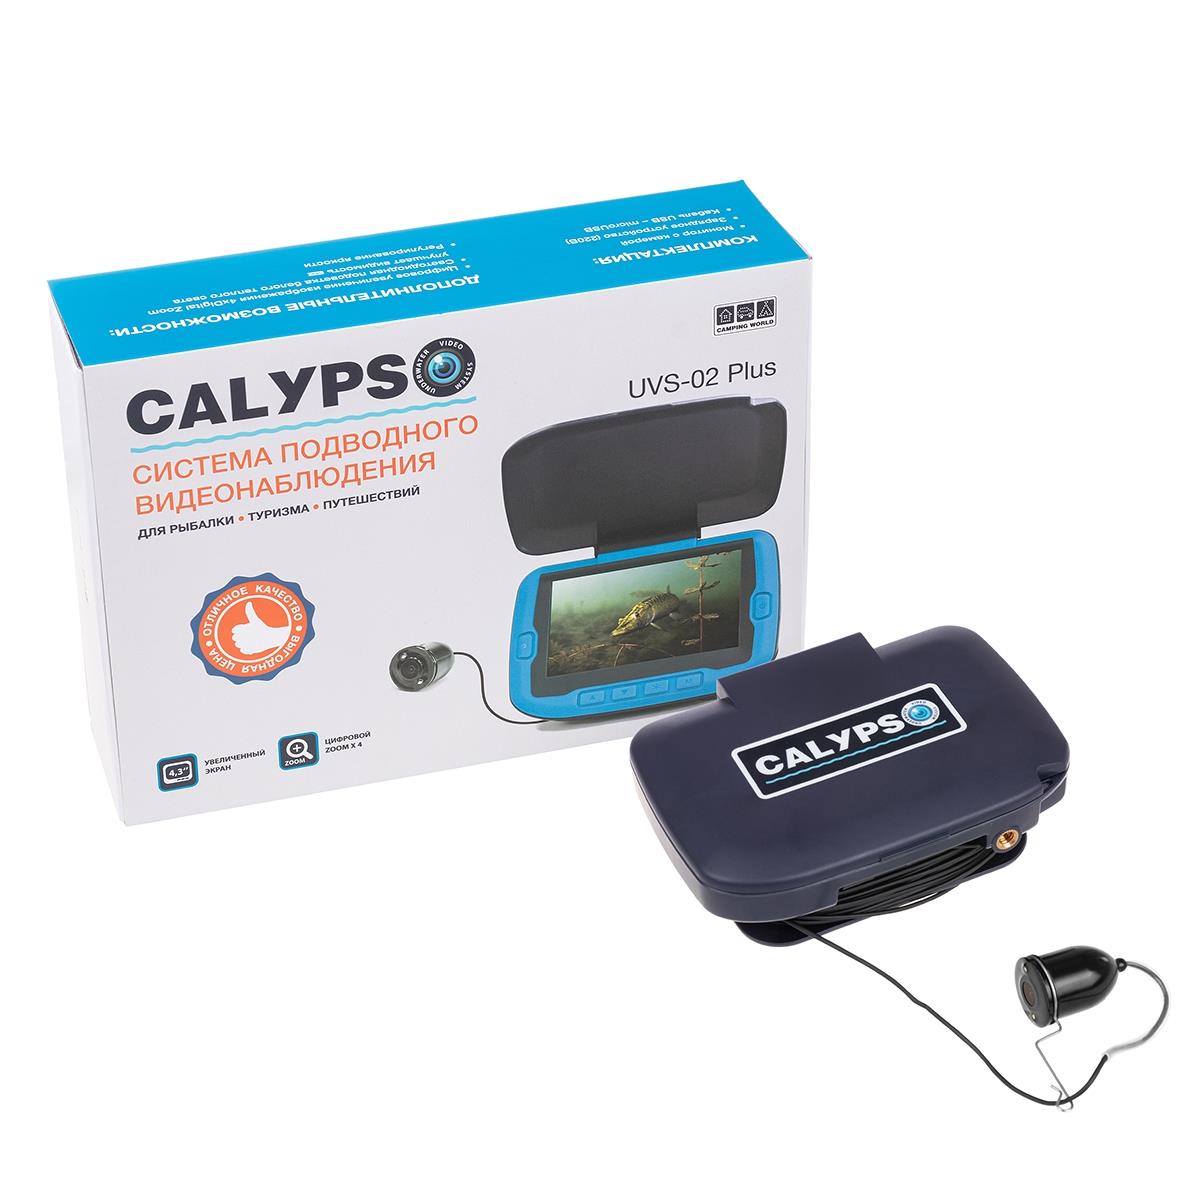 Подводная видеокамера CALYPSO UVS-02 PLUS (FDV-1112) органайзер на солнцезащитный козырек 30×14 5 см